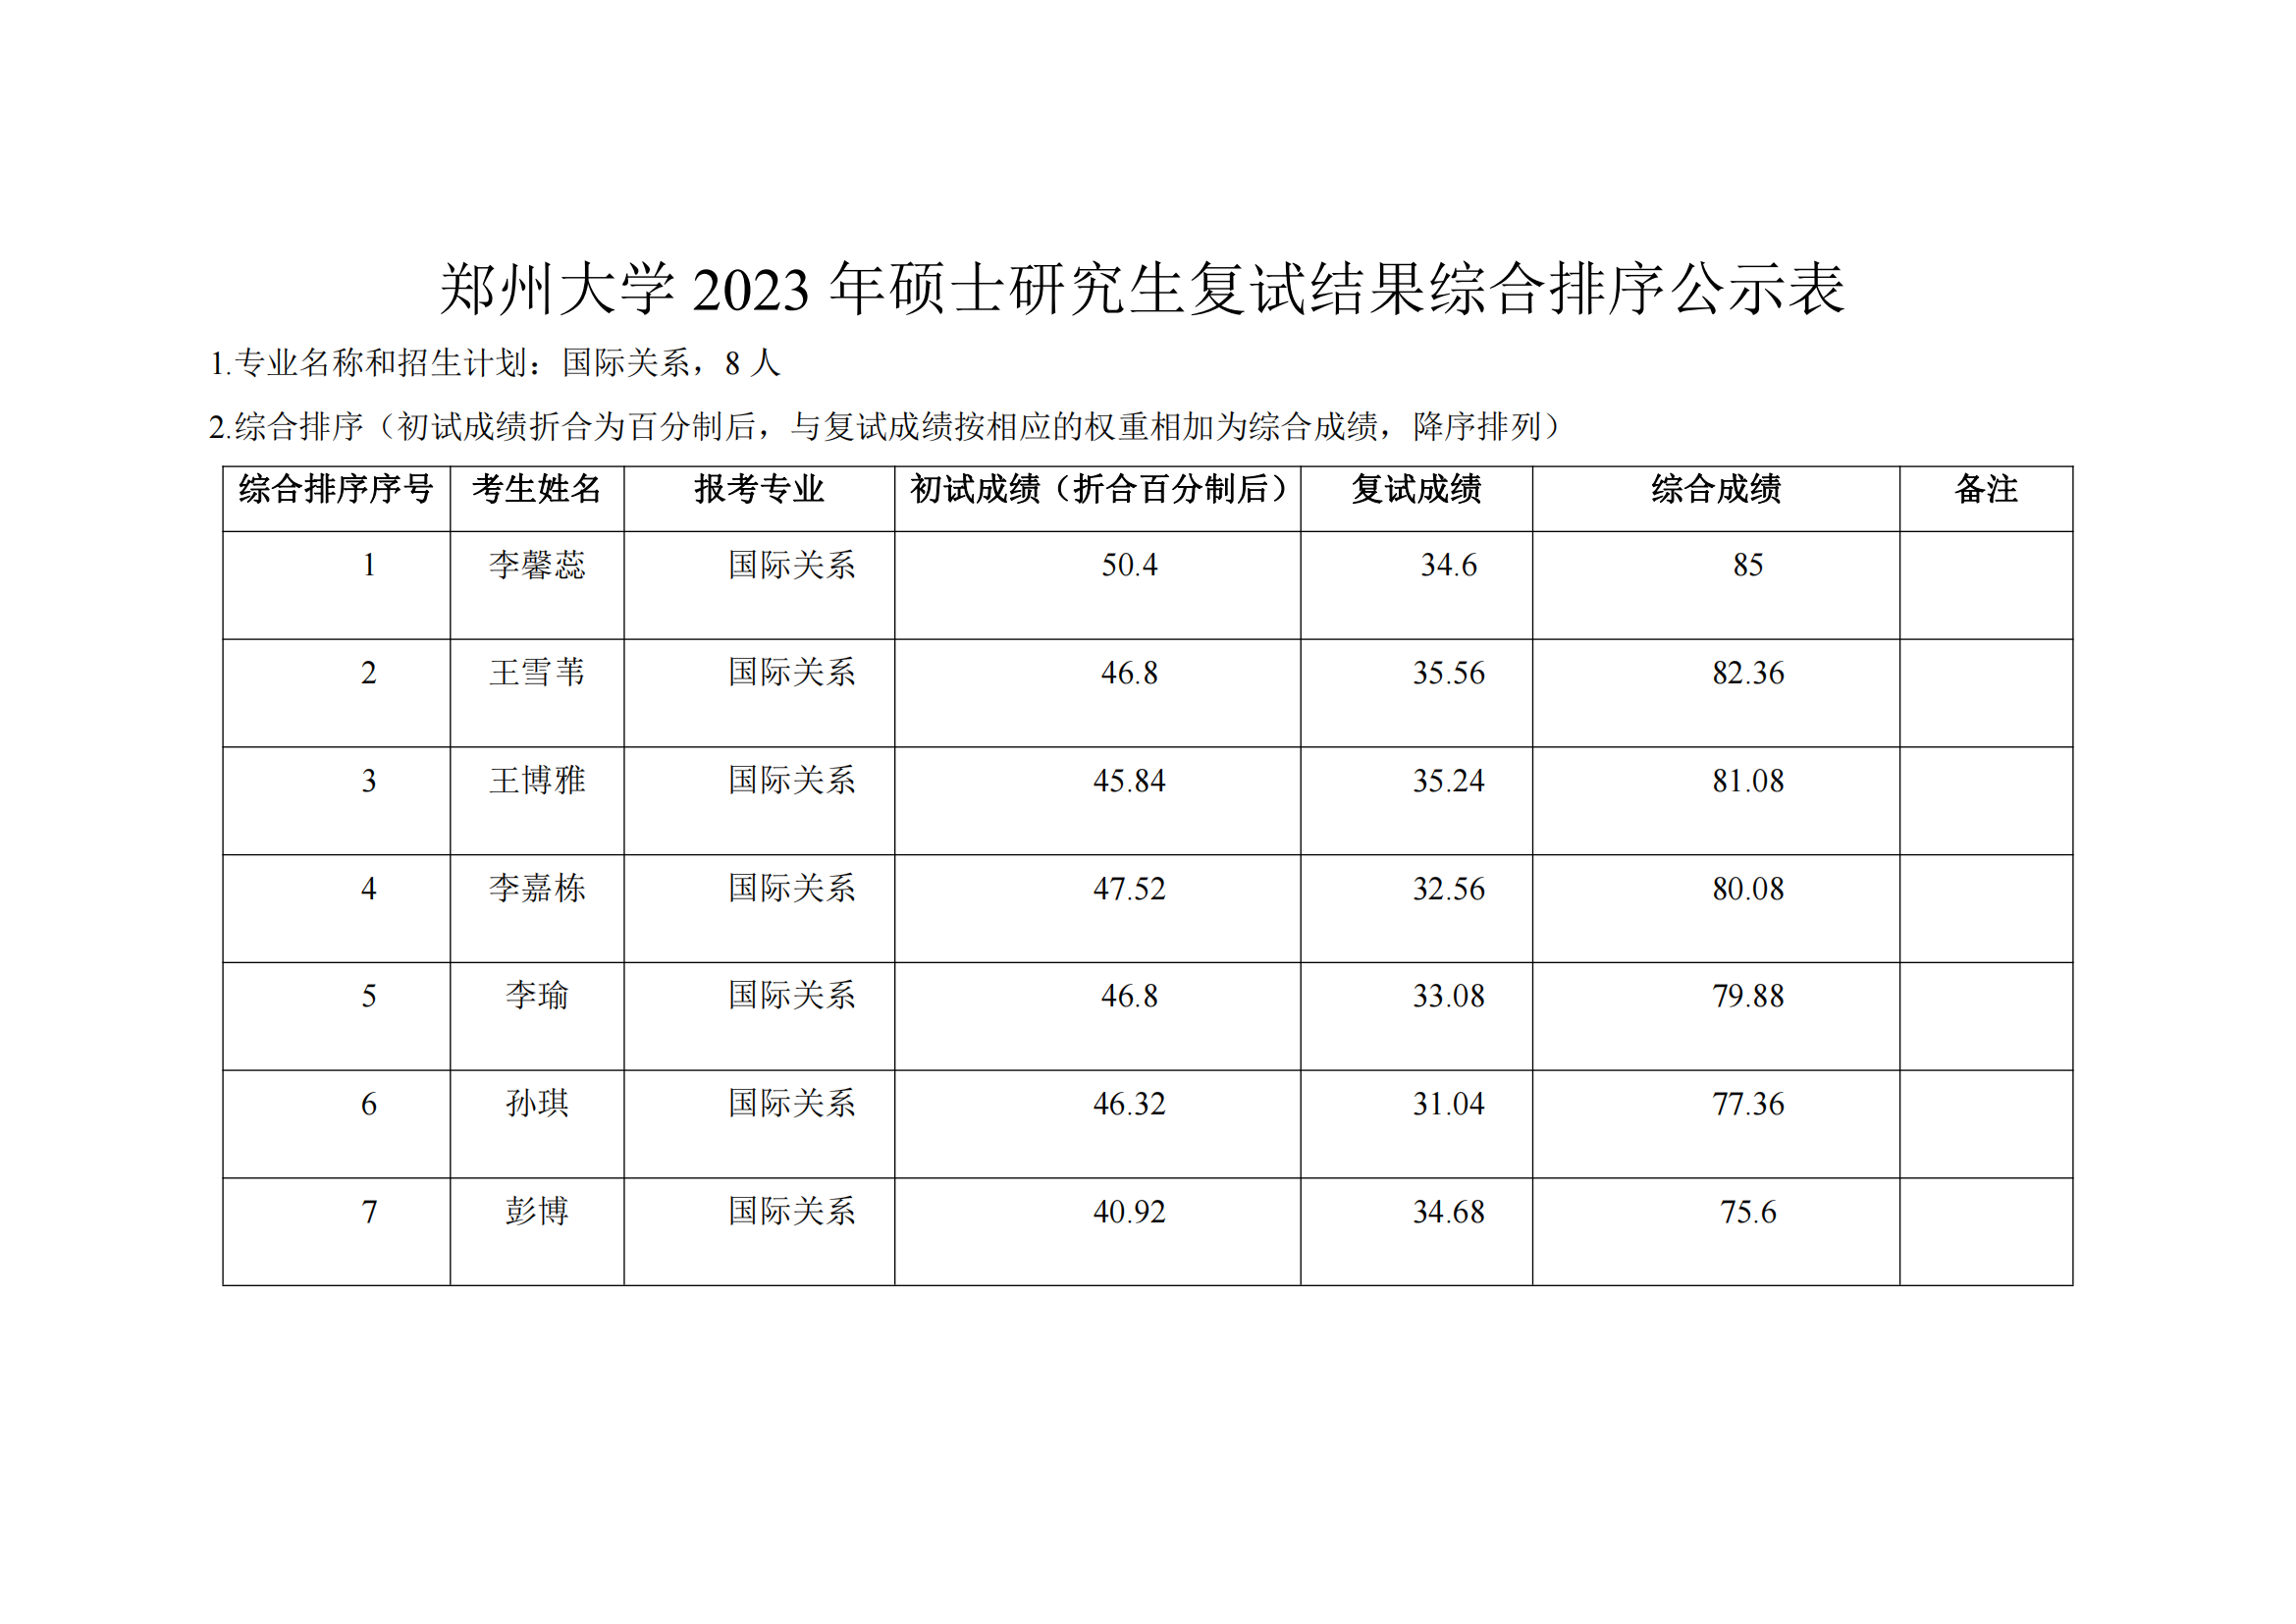 郑州大学马克思主义学院2023年硕士研究生复试结果综合排序公示表_03.png